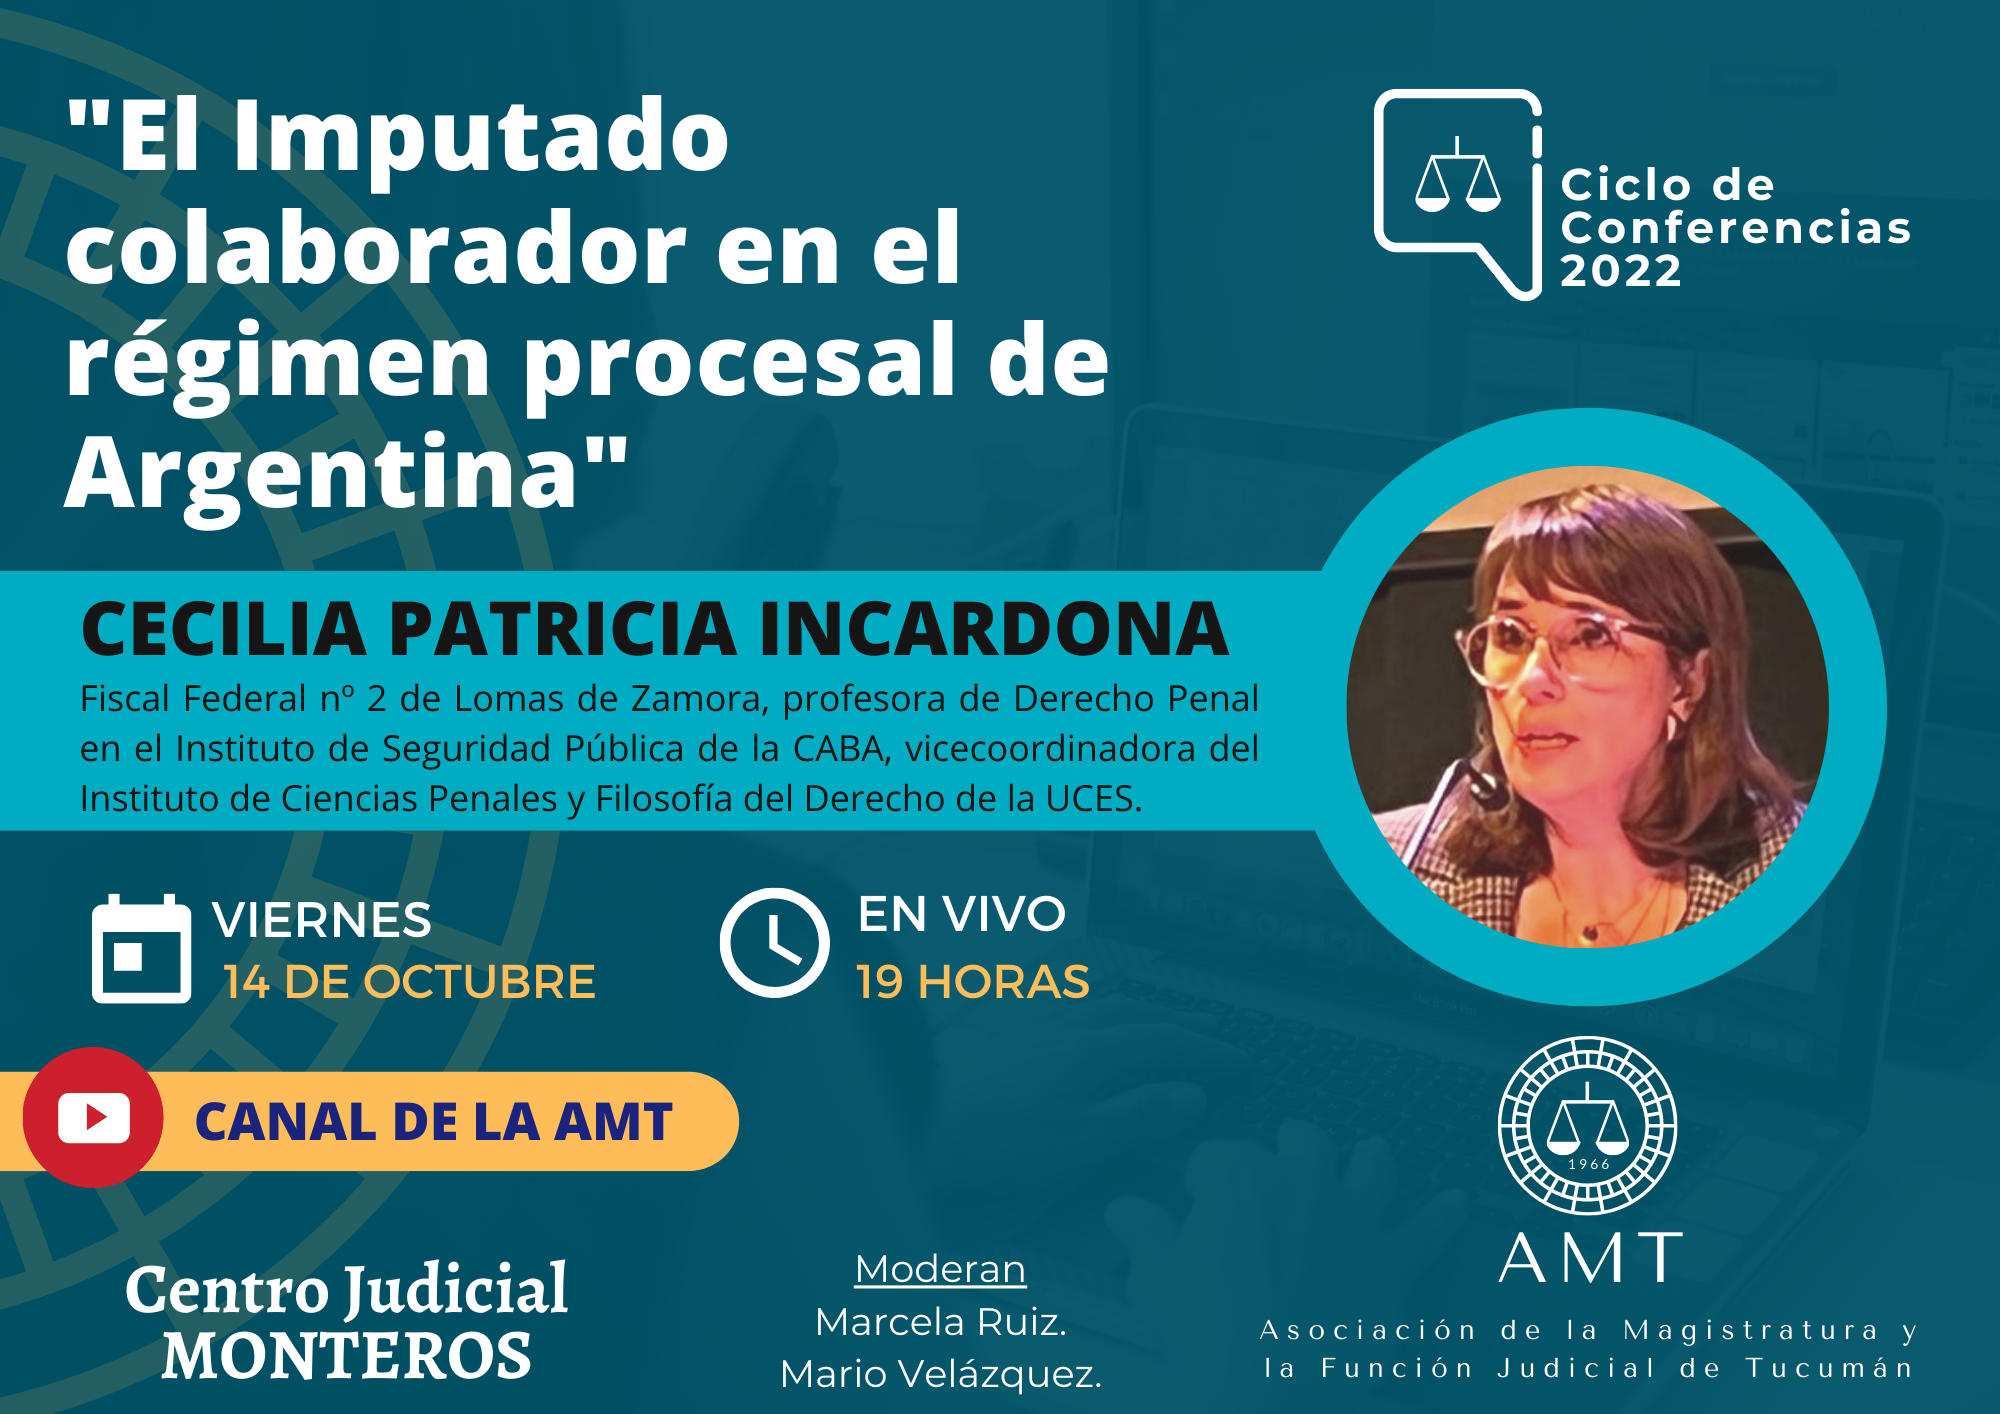 Vuelva a ver la conferencia de Cecilia Patricia Incardona «El Imputado colaborador en el régimen procesal de Argentina»